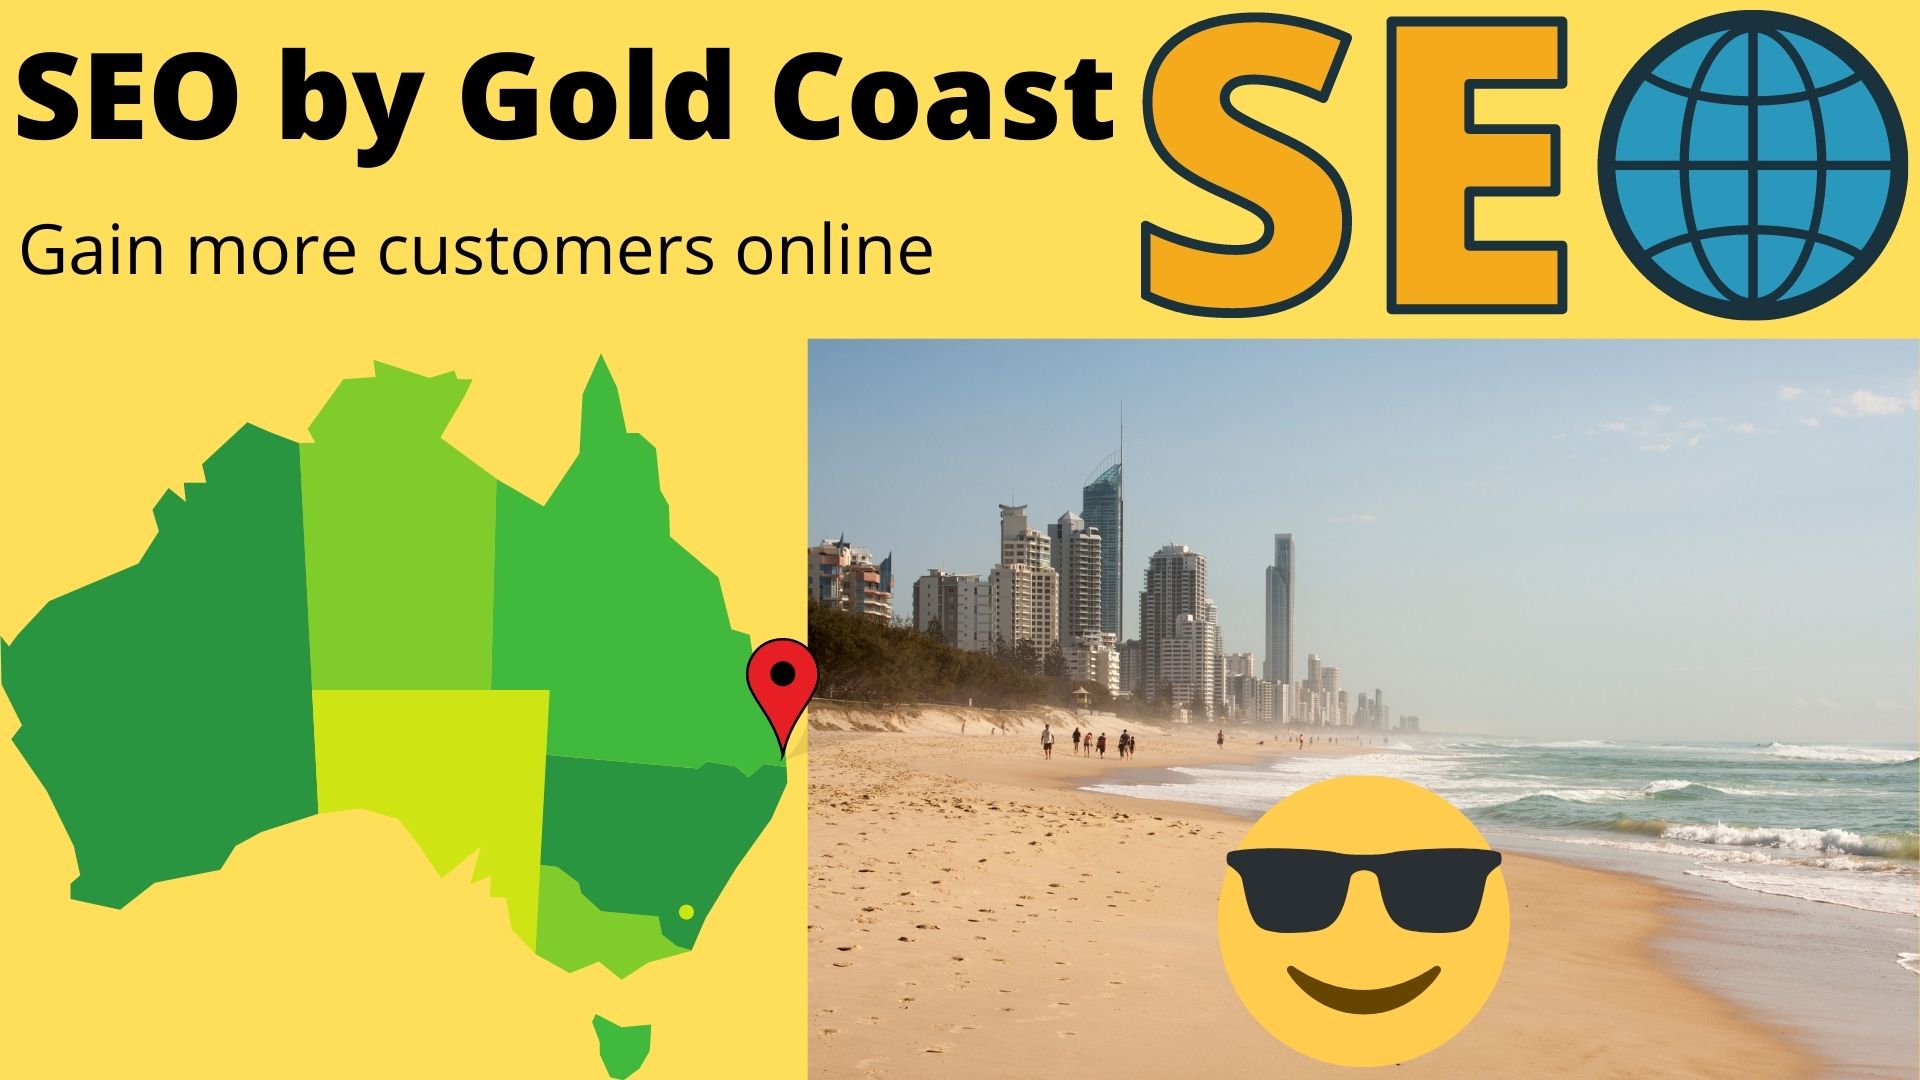 SEO by Australian City - Gold Coast